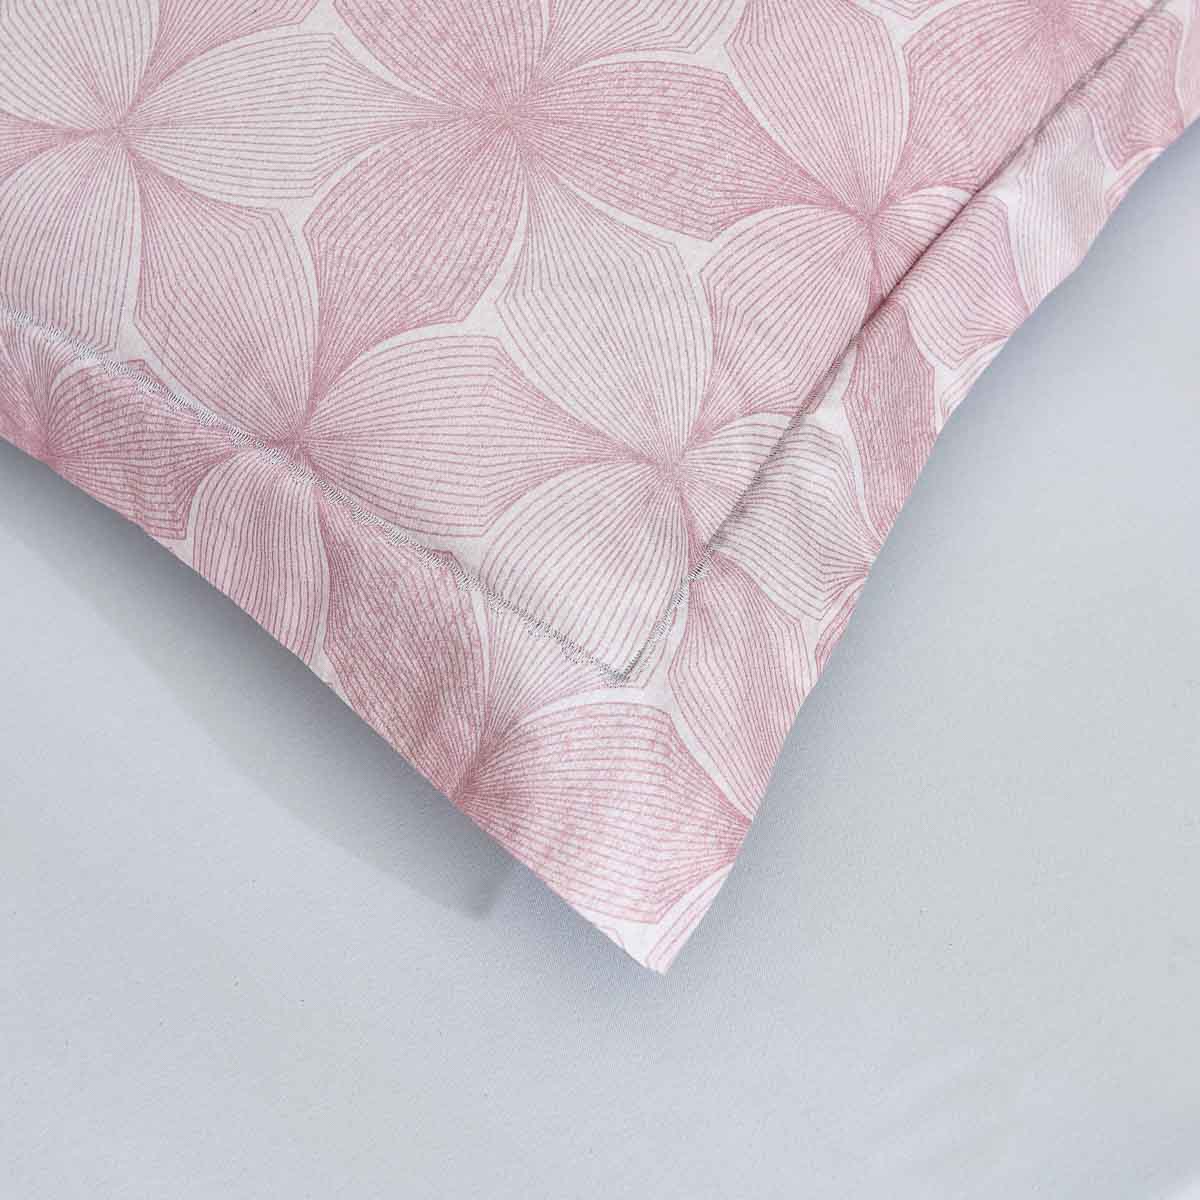 Breezy Pink Premium Cotton Pillow Sham